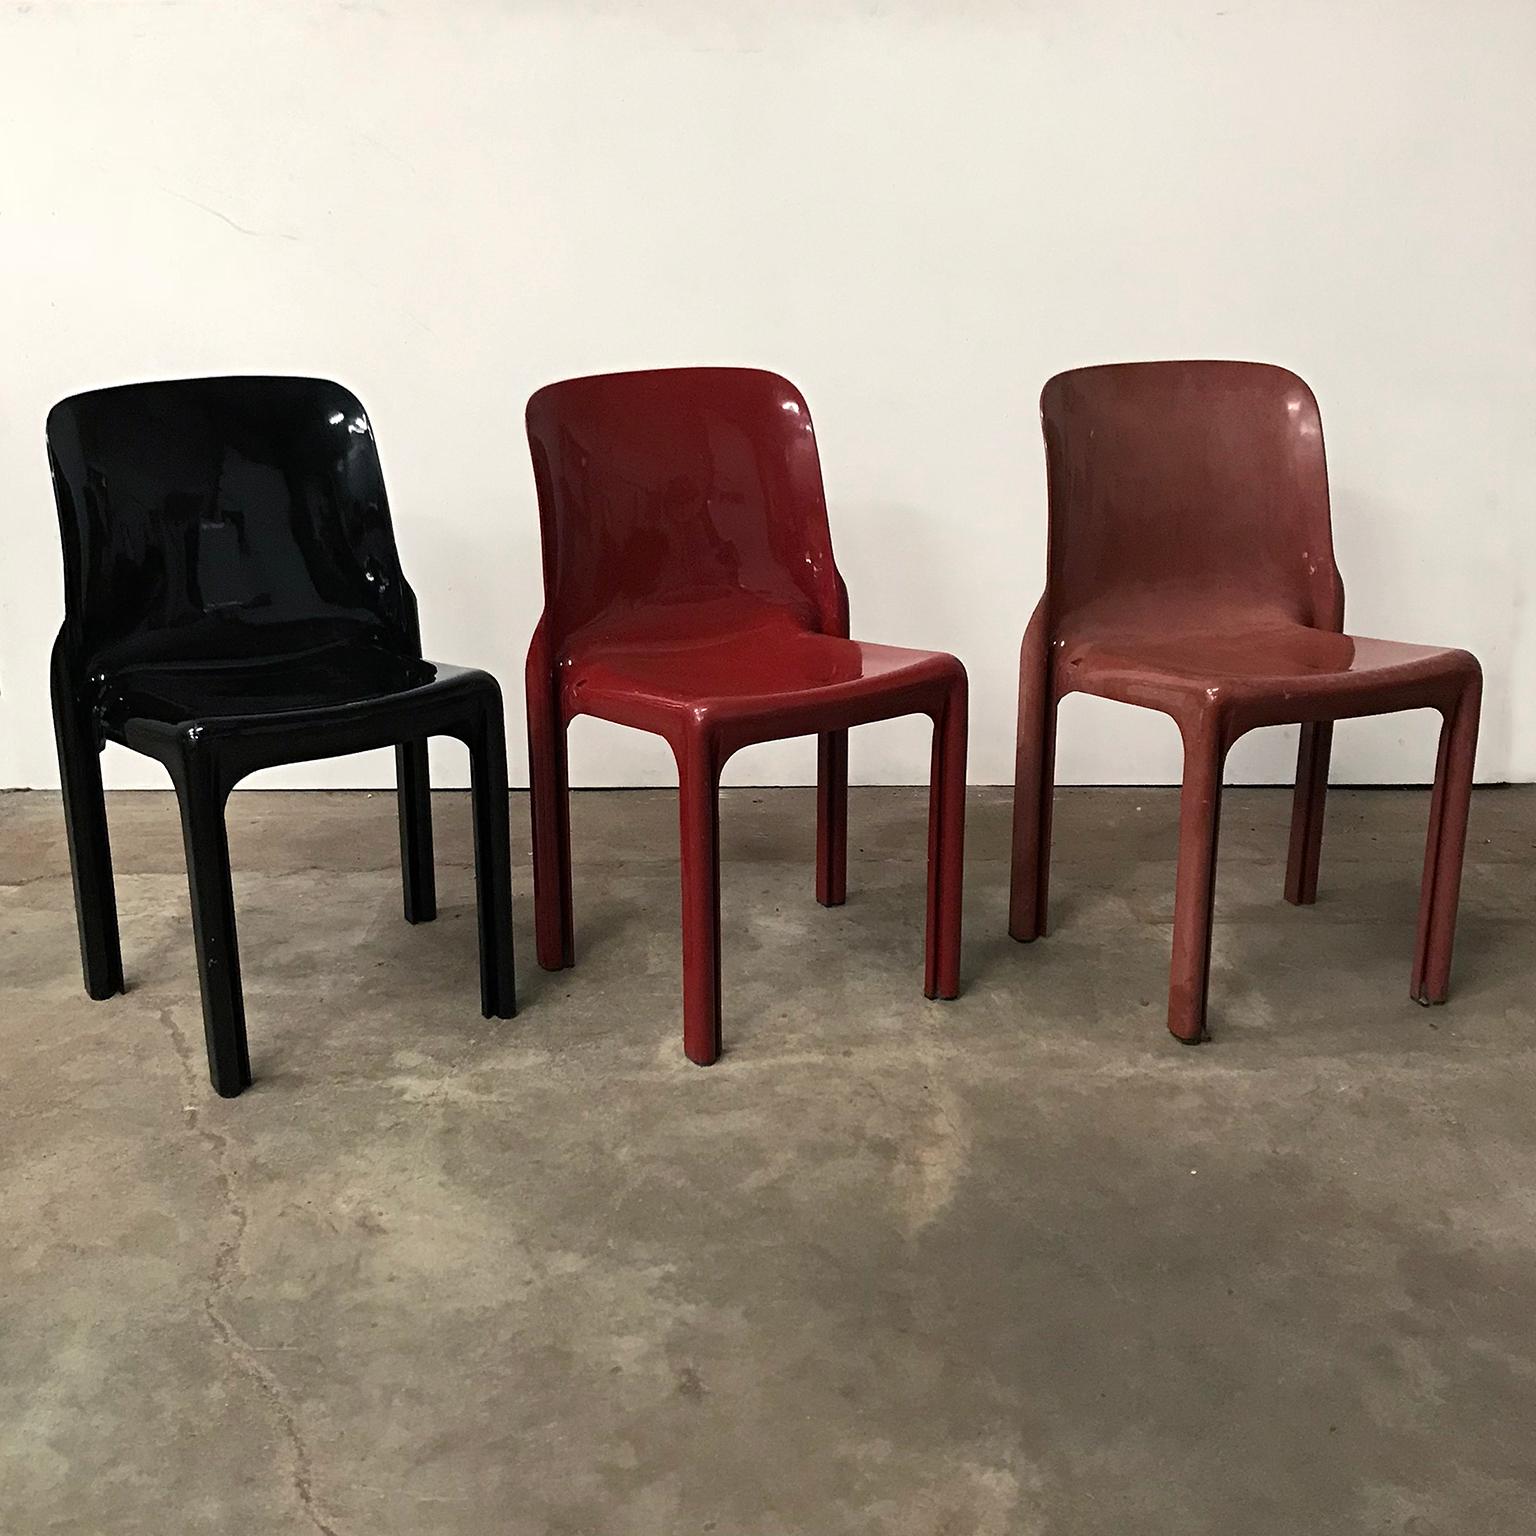 Ensemble de trois chaises selene et une table Stadio noire de Vico Magistretti par le studio Artemide. La chaise noire est en bon état, à l'exception de quelques rayures et de quelques petites bosses sur le bord (siège et dossier), voir photo n°6.